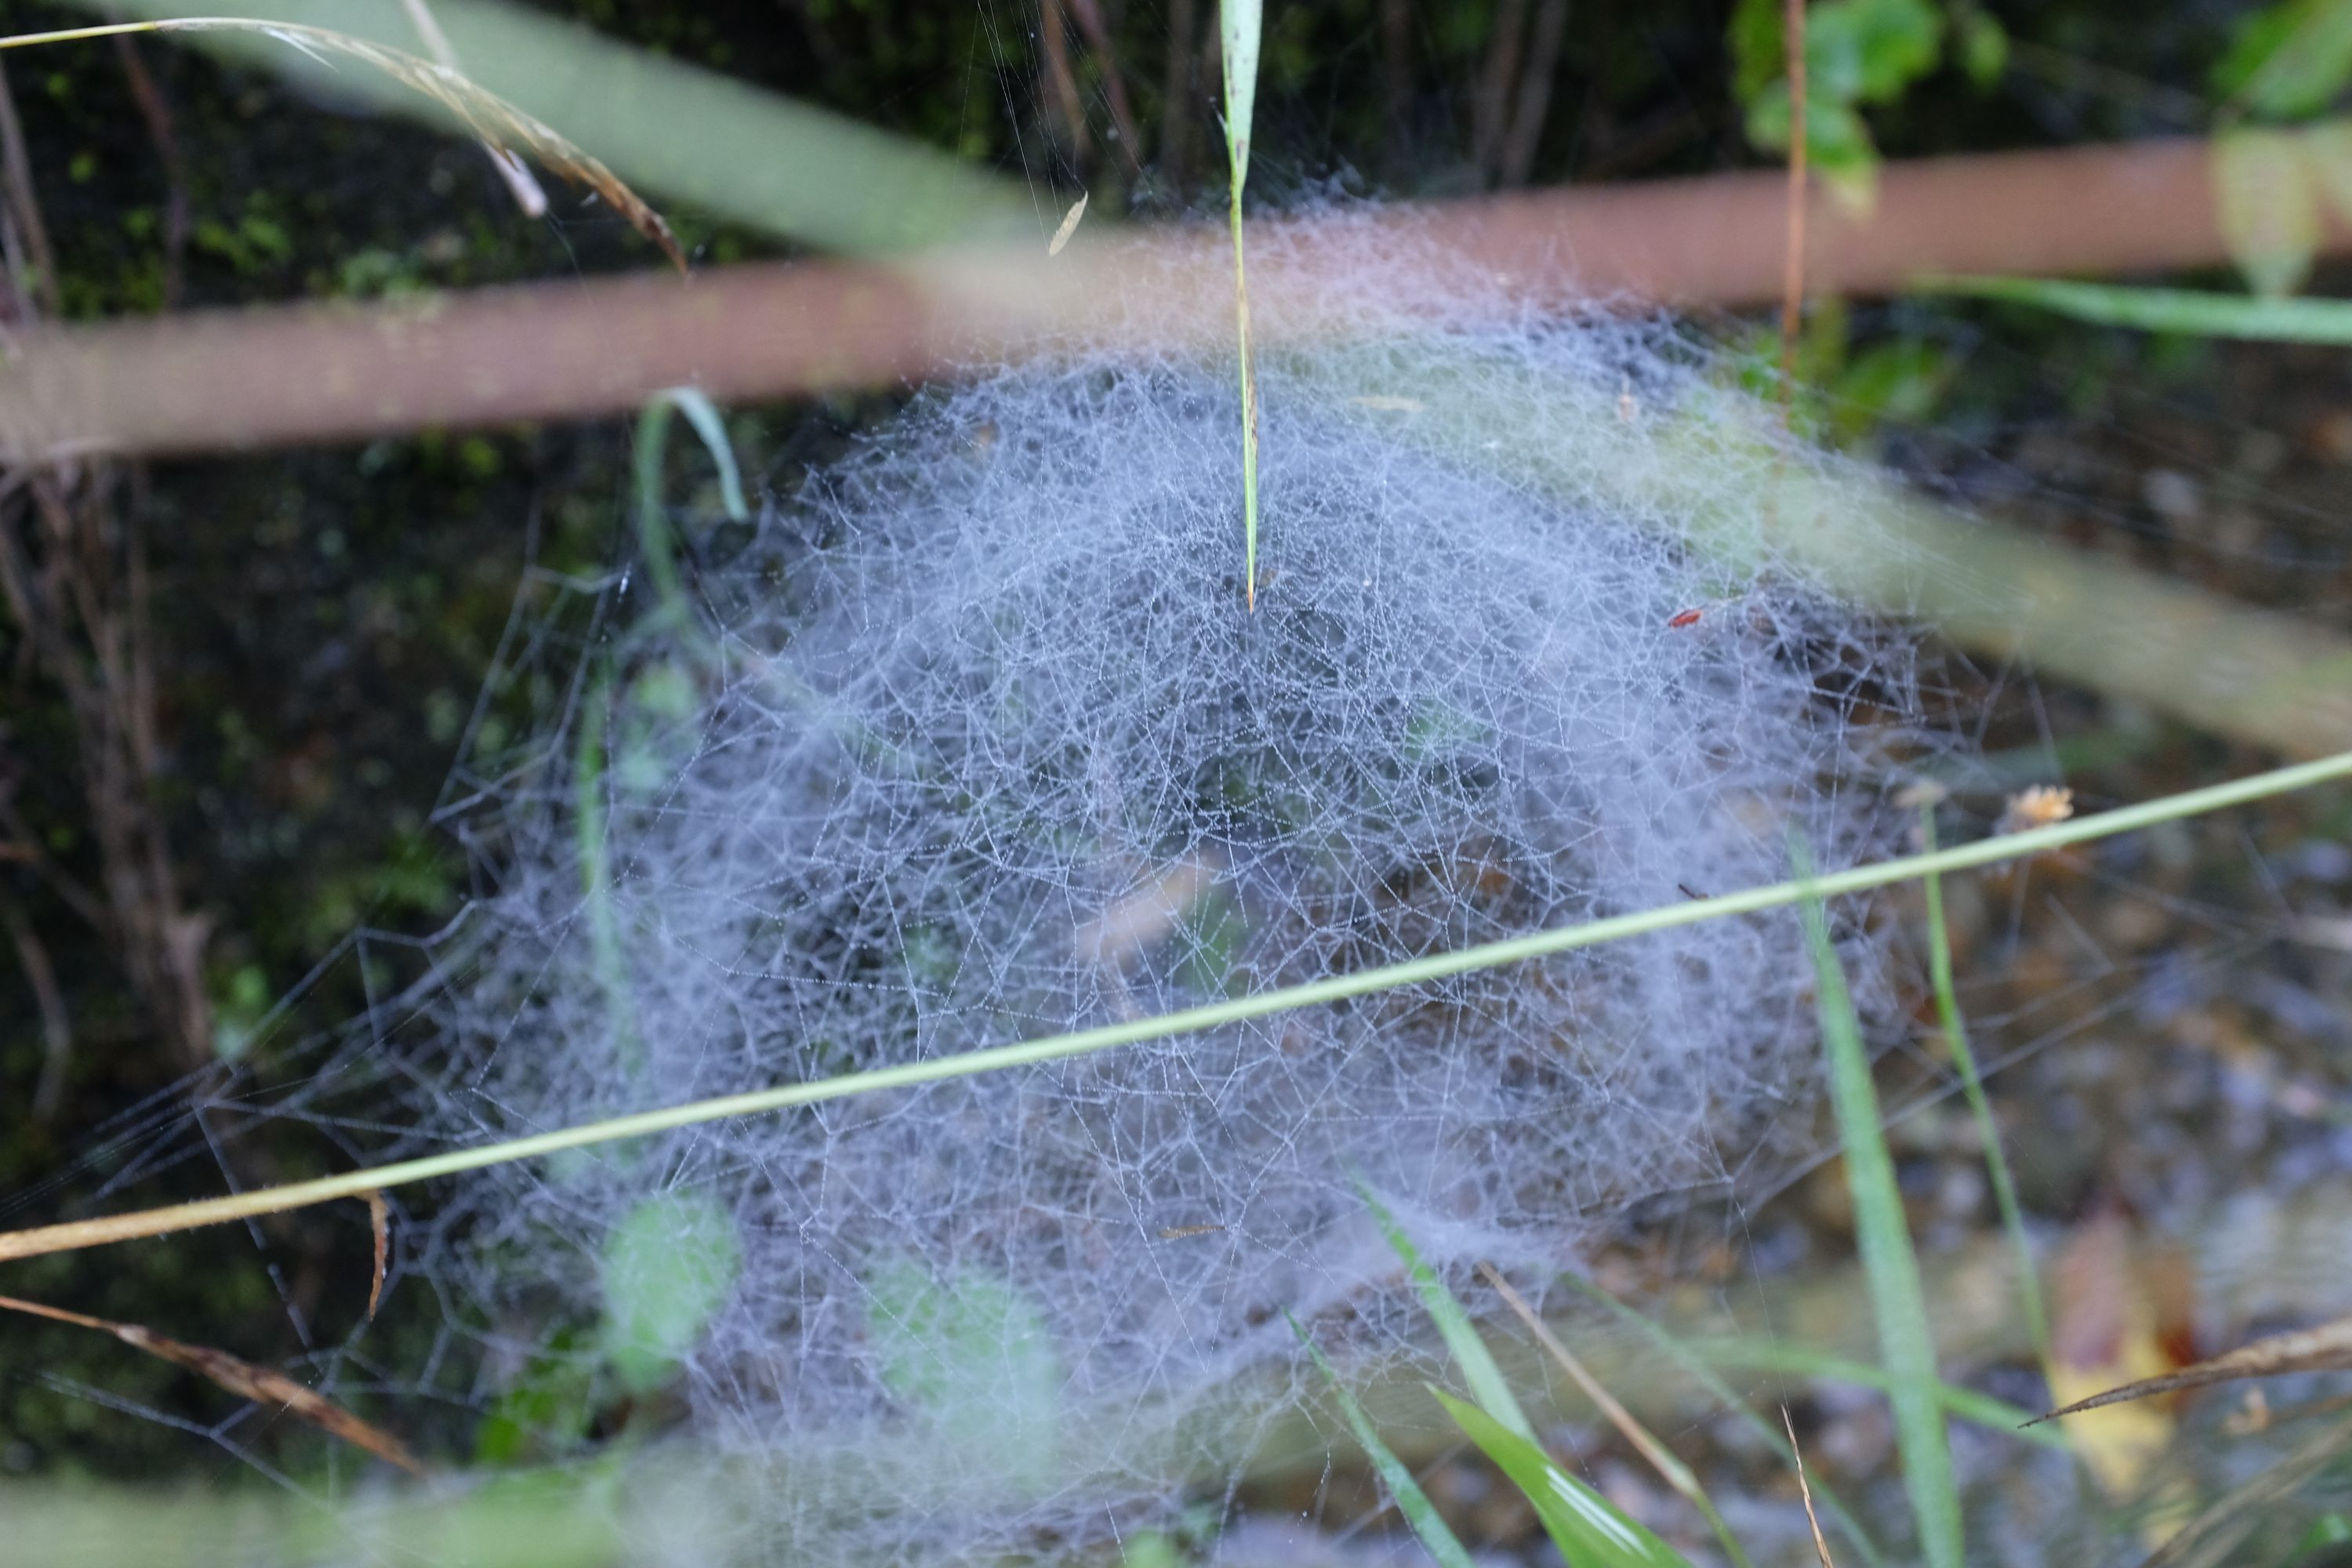 A dense spiderweb in the undergrowth.